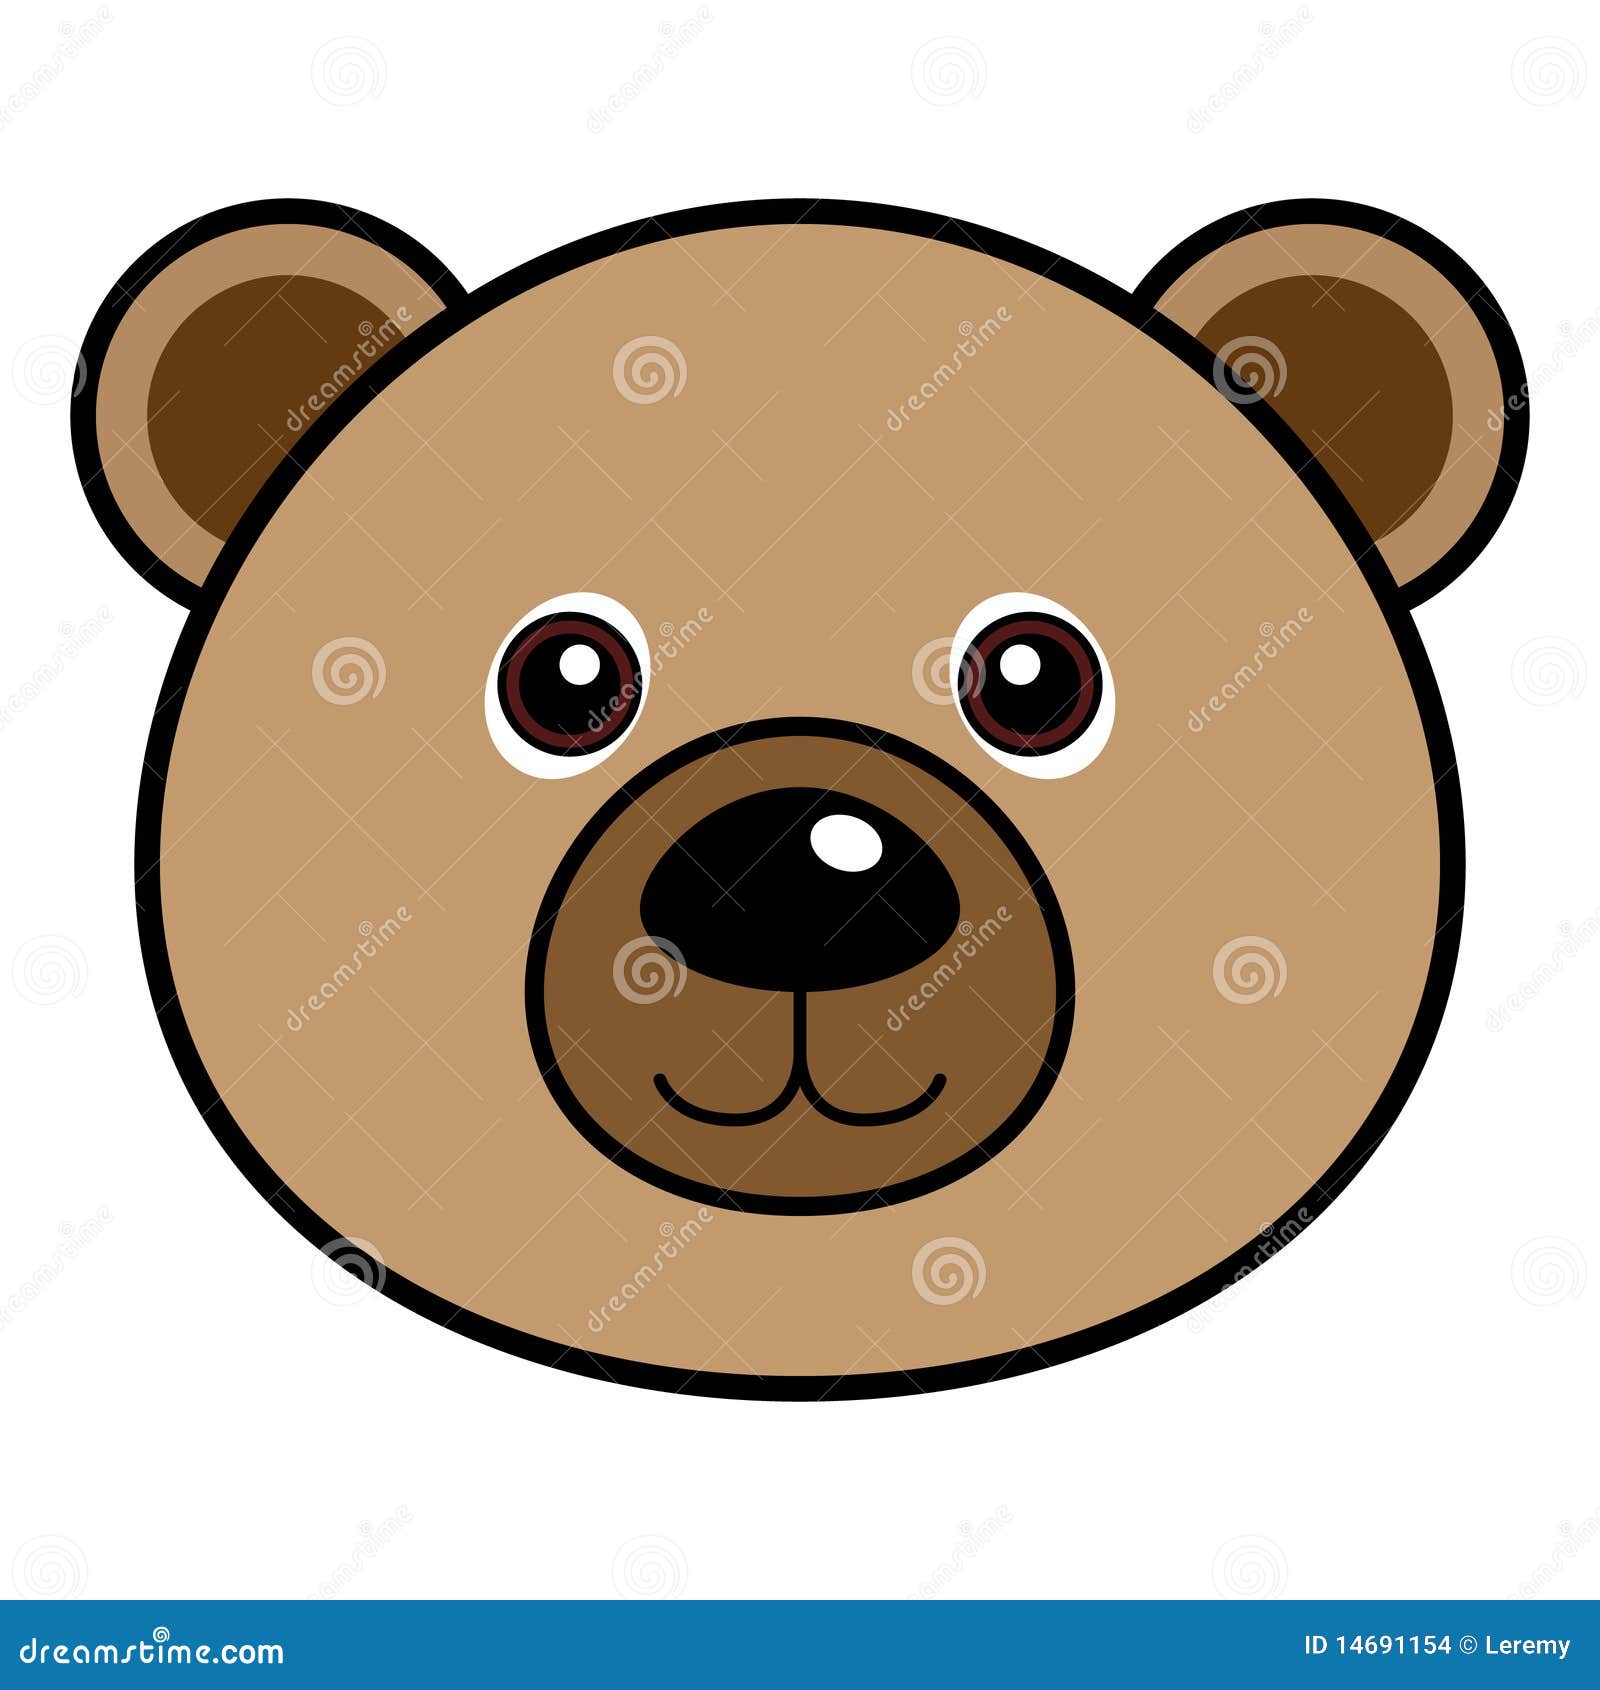 teddy bear head clip art - photo #7